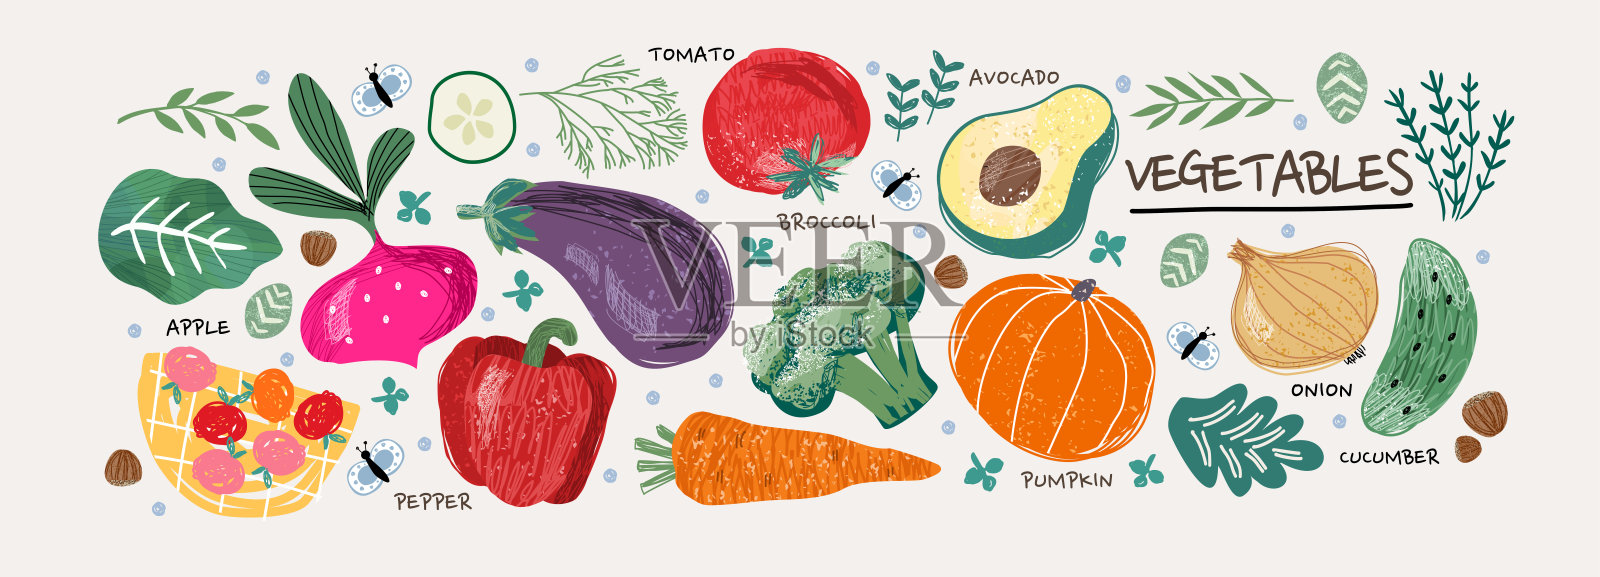 蔬菜。载体食品插图:番茄、甜菜、月桂叶、辣椒、茄子、黄瓜、花椰菜、胡萝卜、南瓜、鳄梨、洋葱、迷迭香插画图片素材